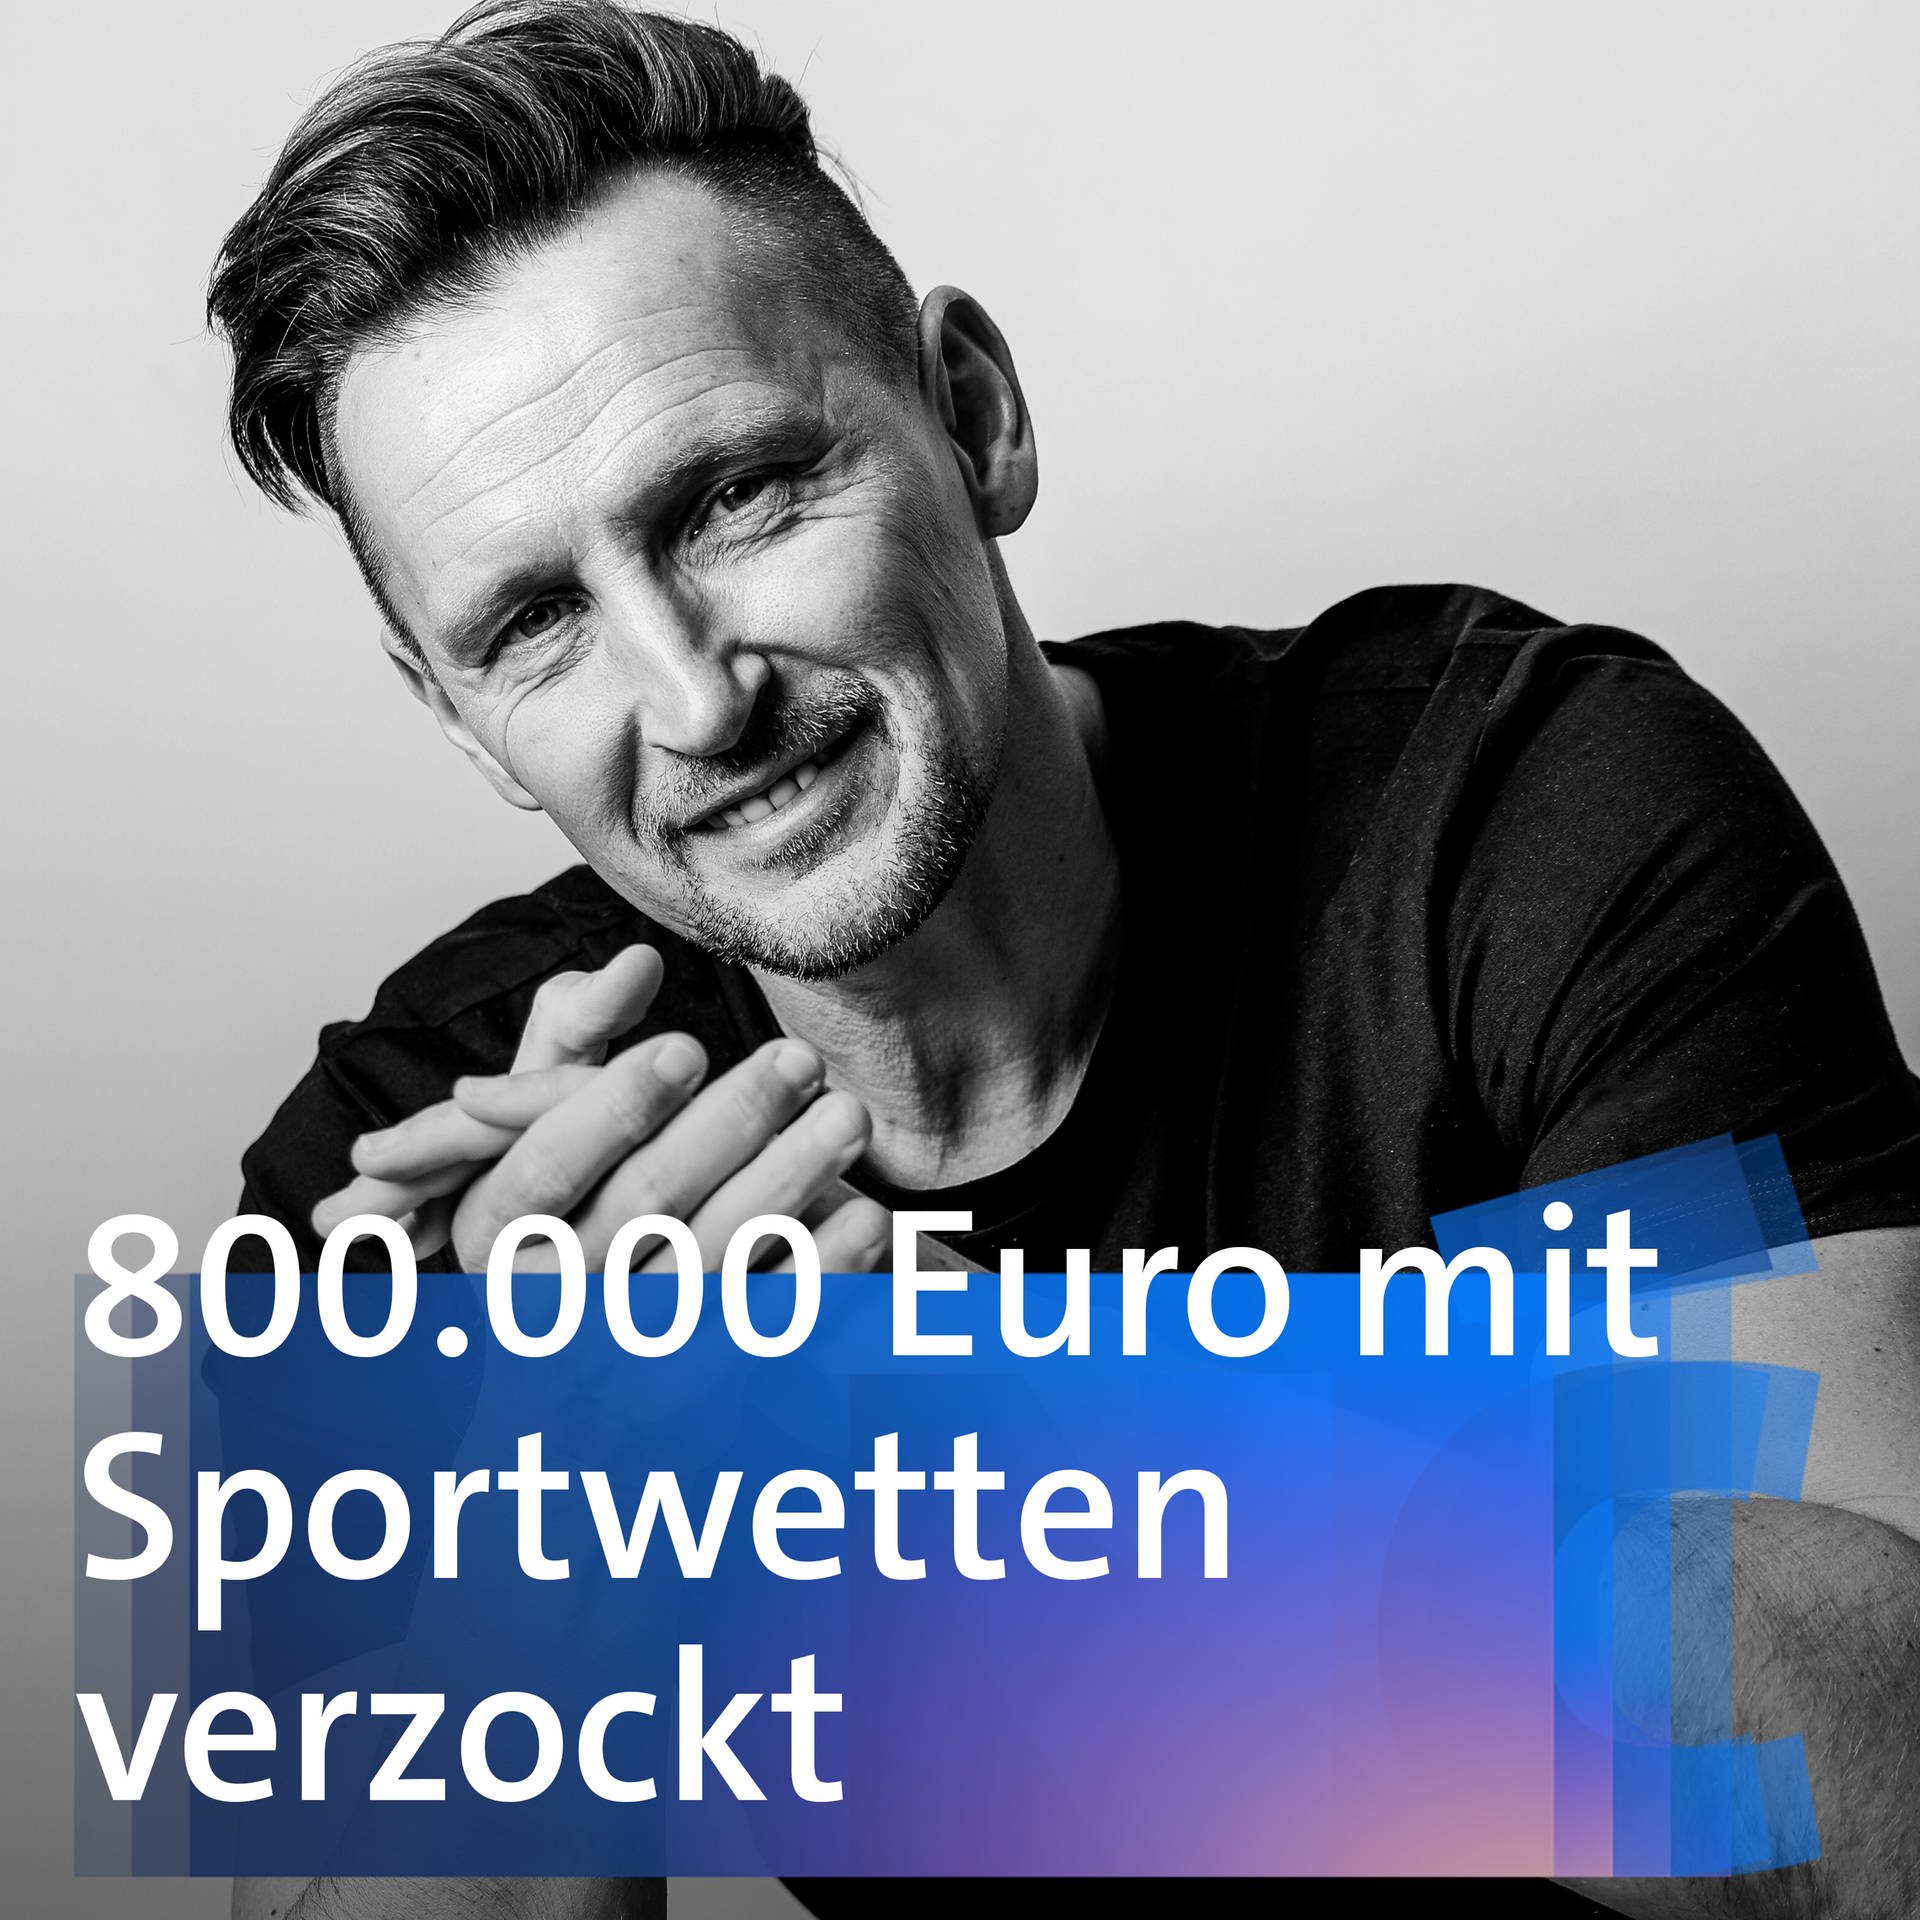 800.000 Euro mit Sportwetten verzockt – Thomas Melchior